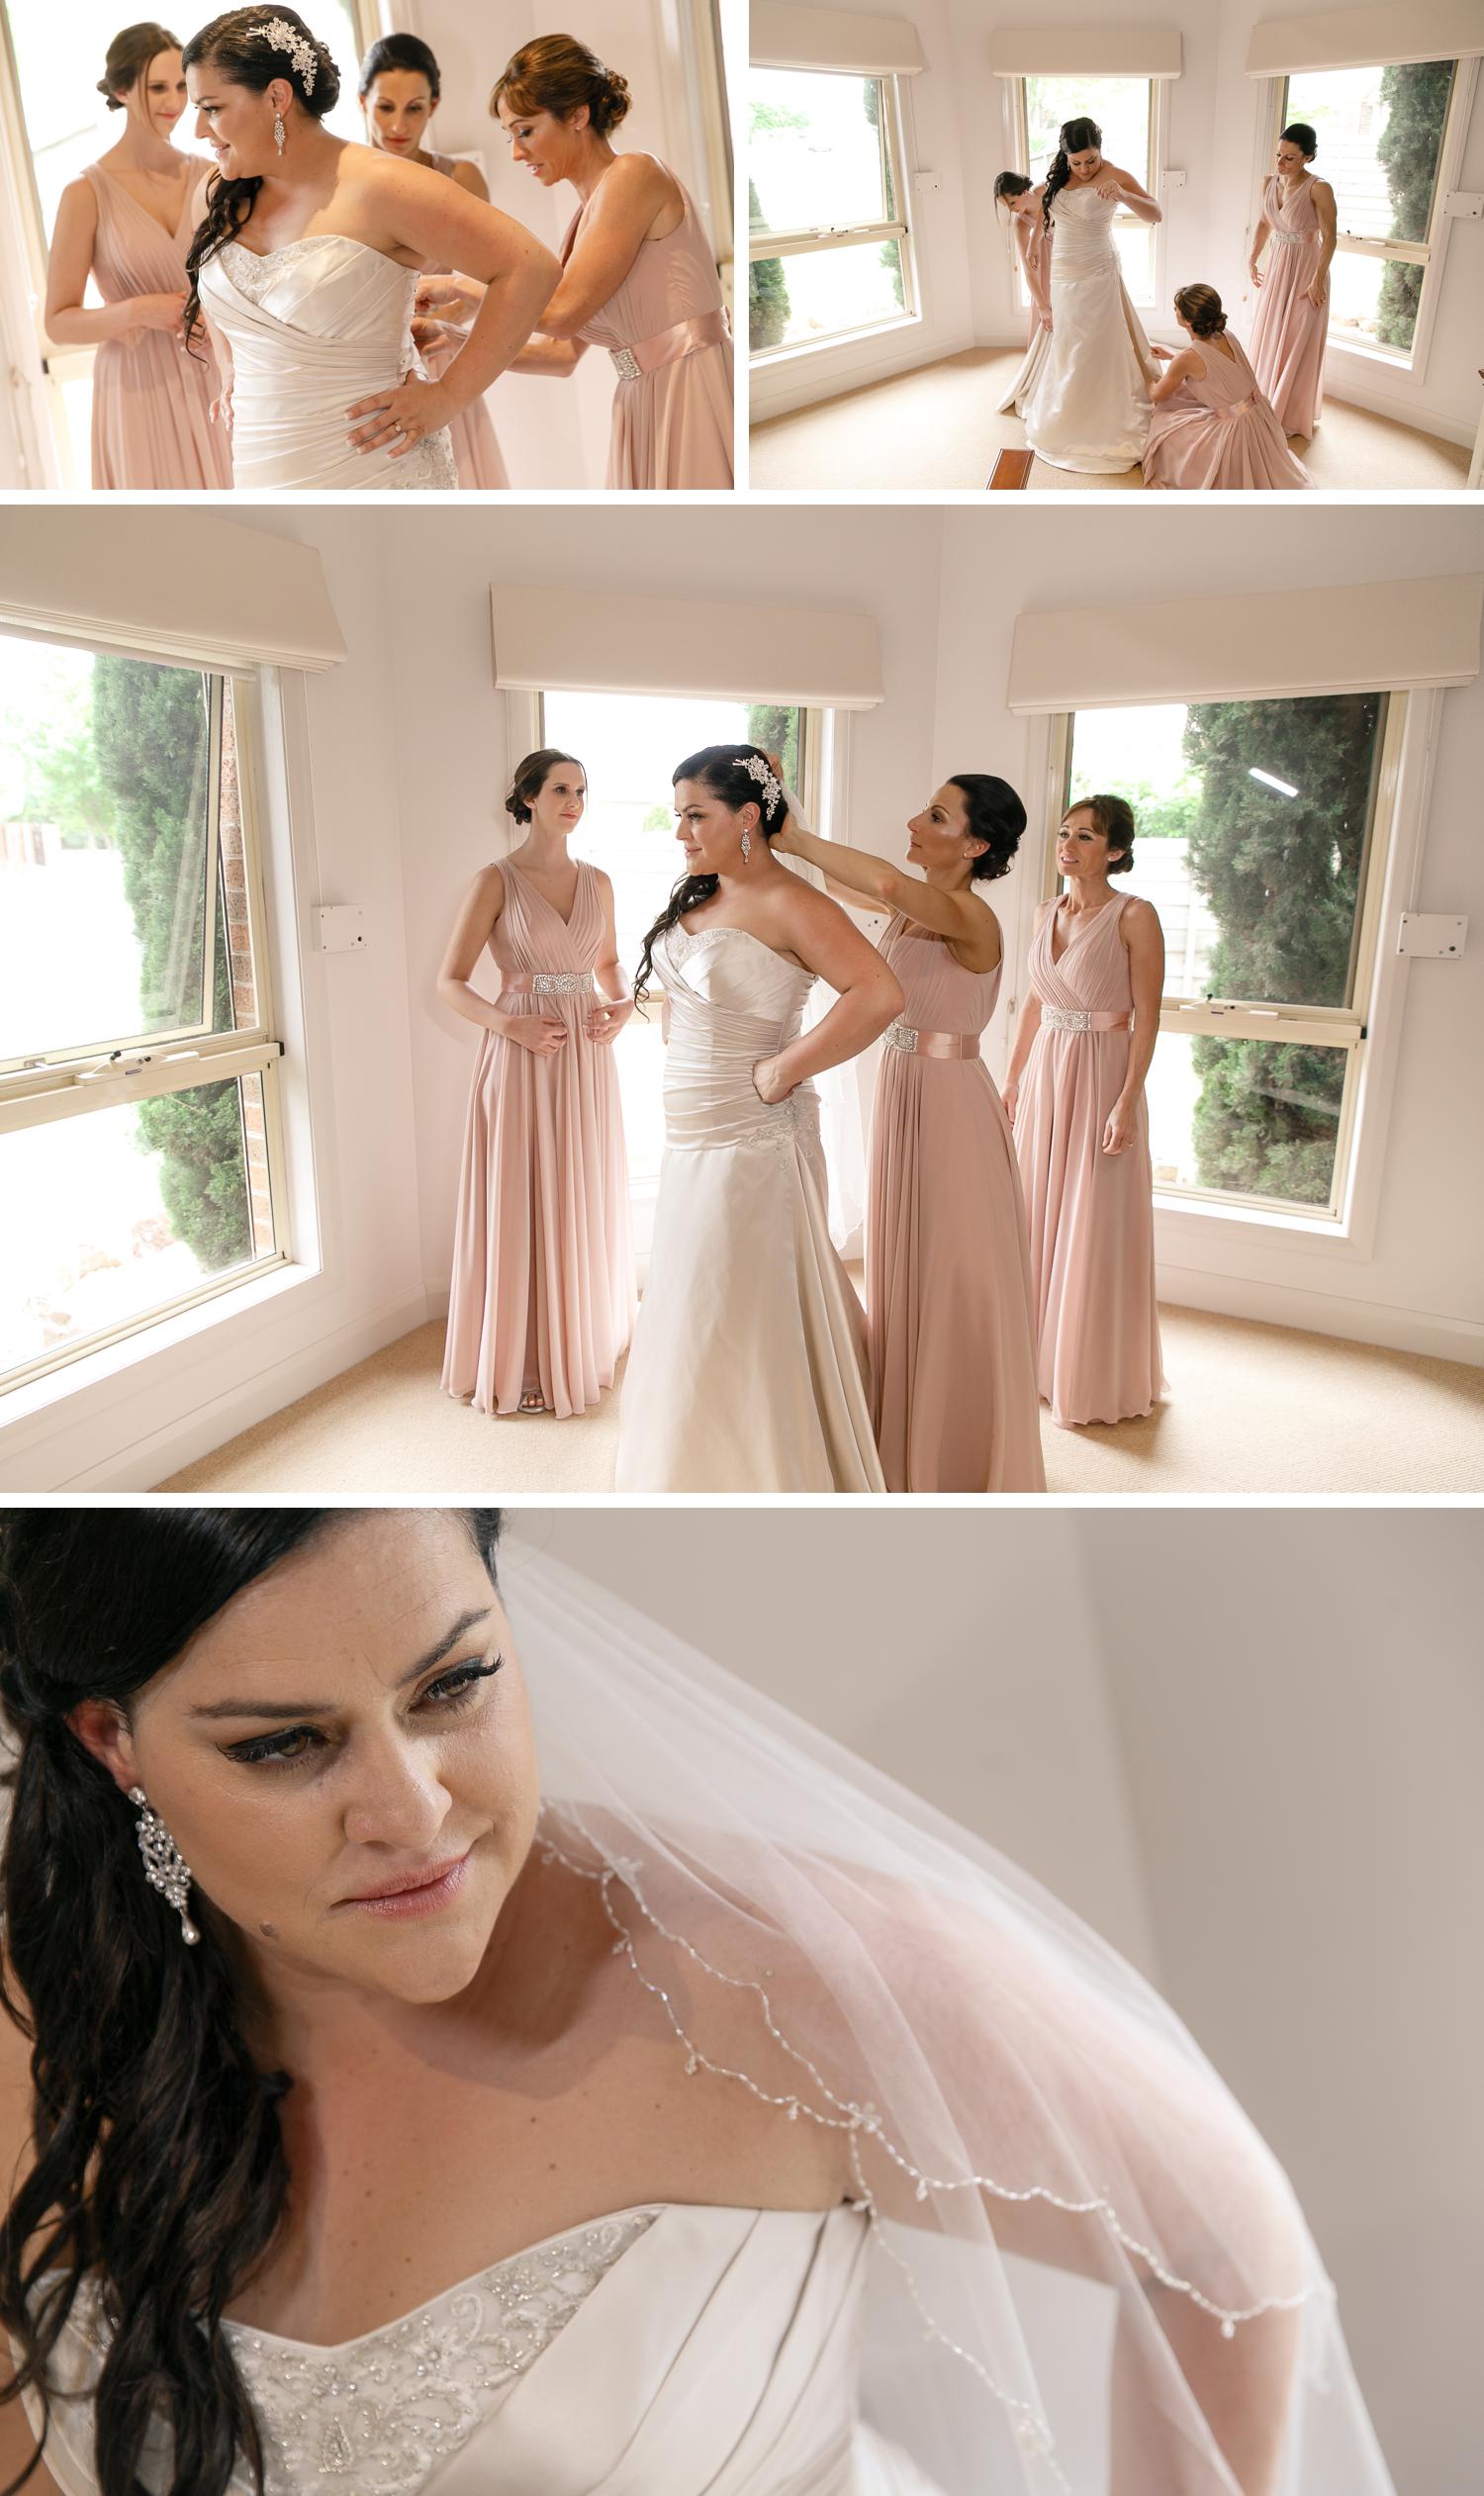 Traralgon Gippsland Wedding, Bride Getting Ready, Beautiful Wedding Dress Photo, Small Wedding Details by Danae Studios